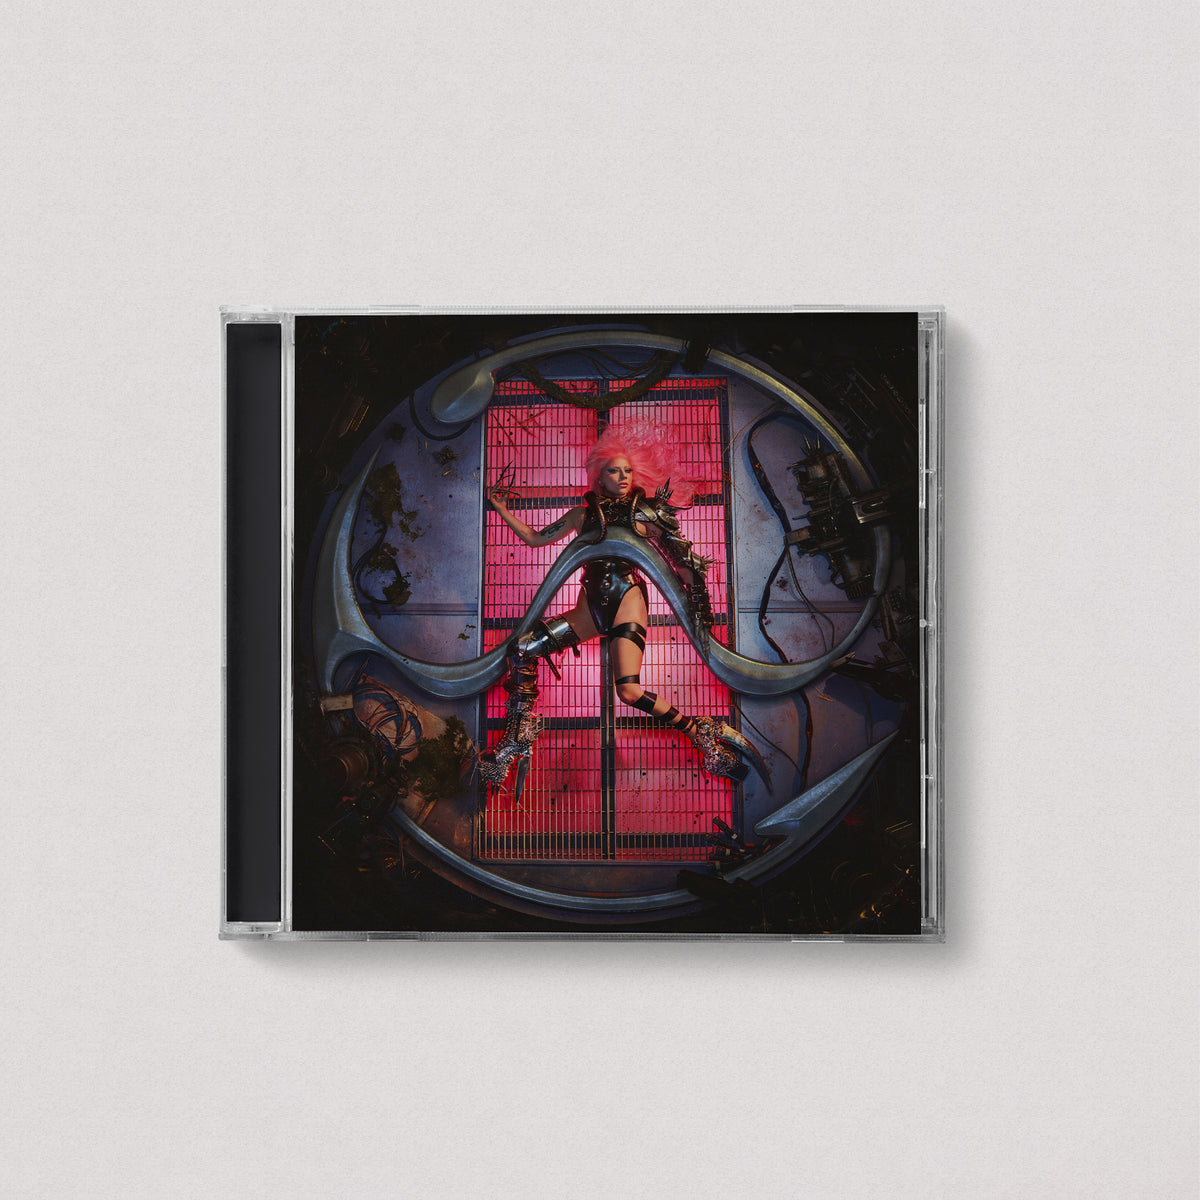 Lady Gaga - Chromatica (Standard, CD)